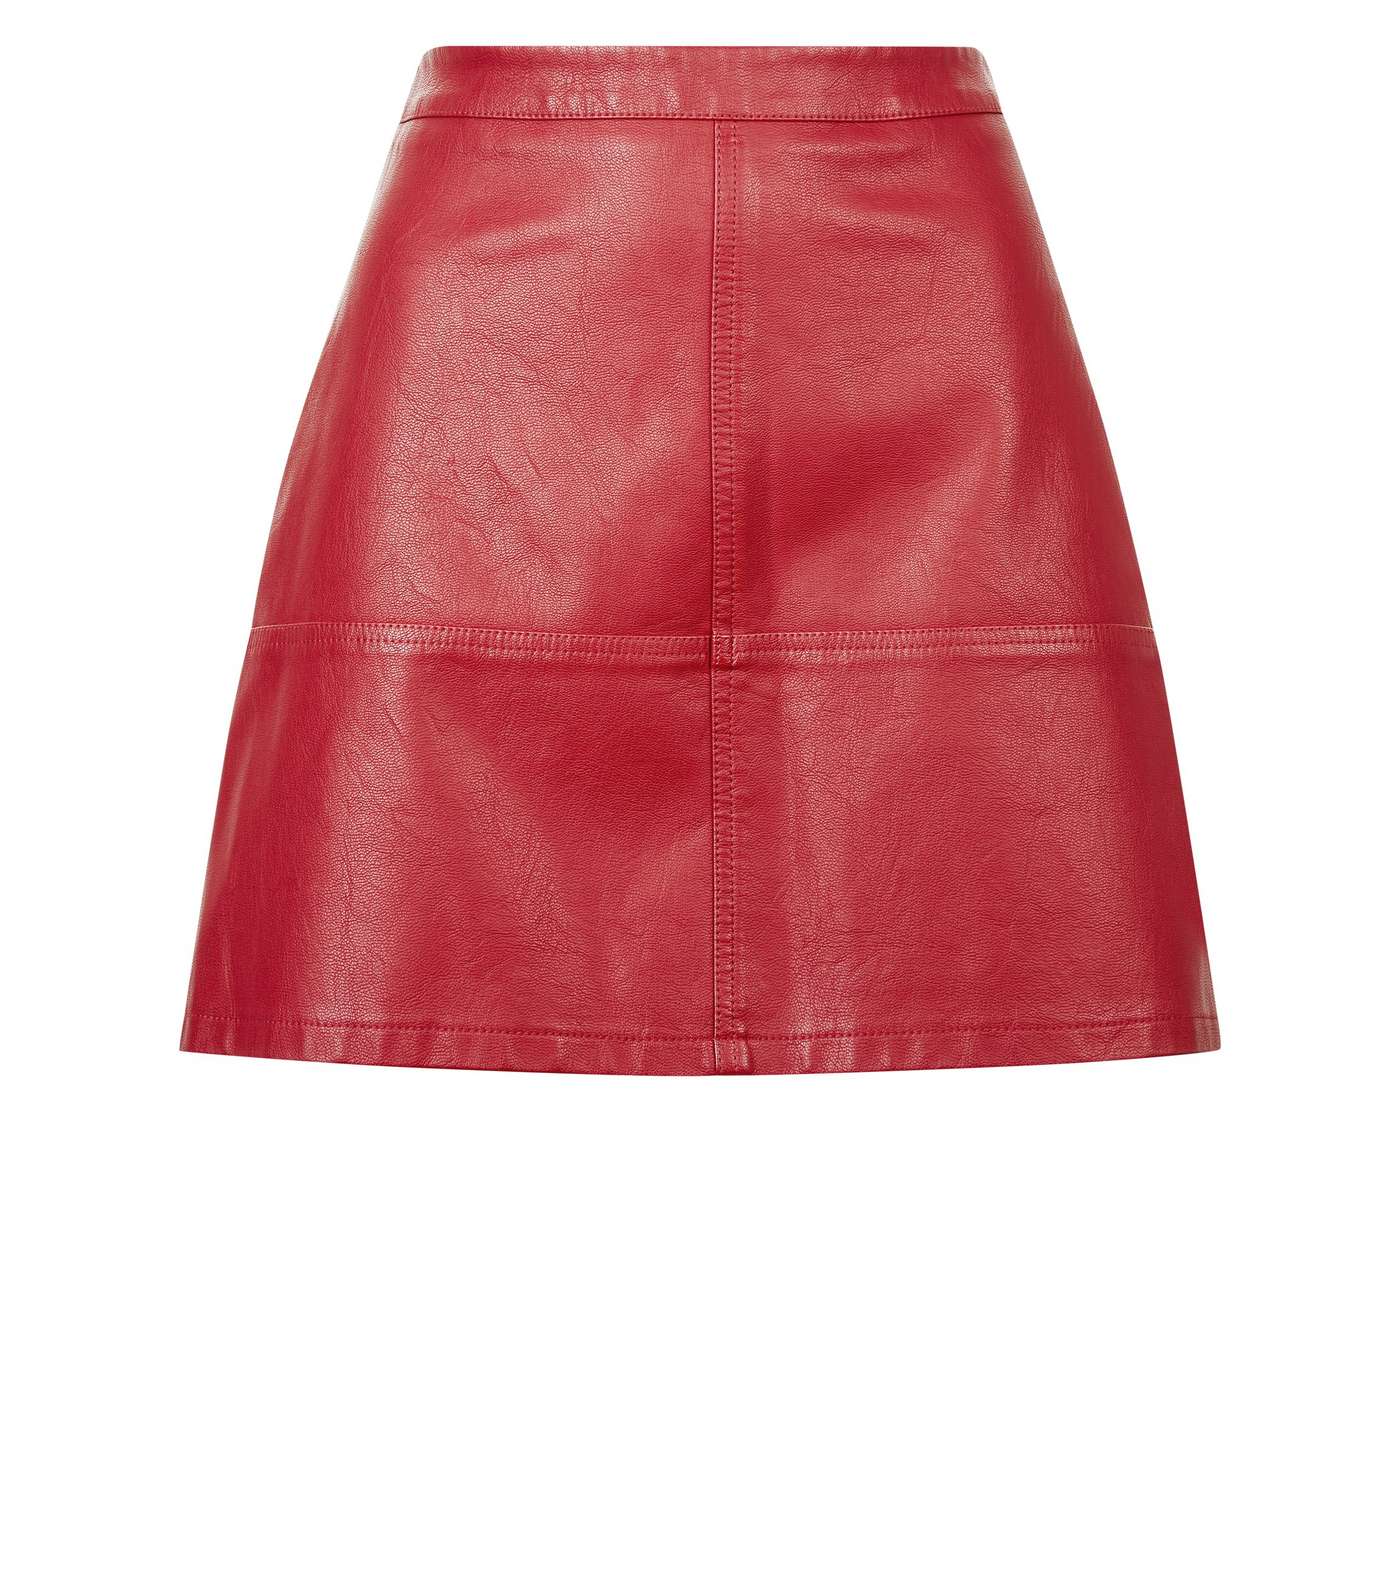 Petite Dark Red Leather-Look Mini Skirt Image 4